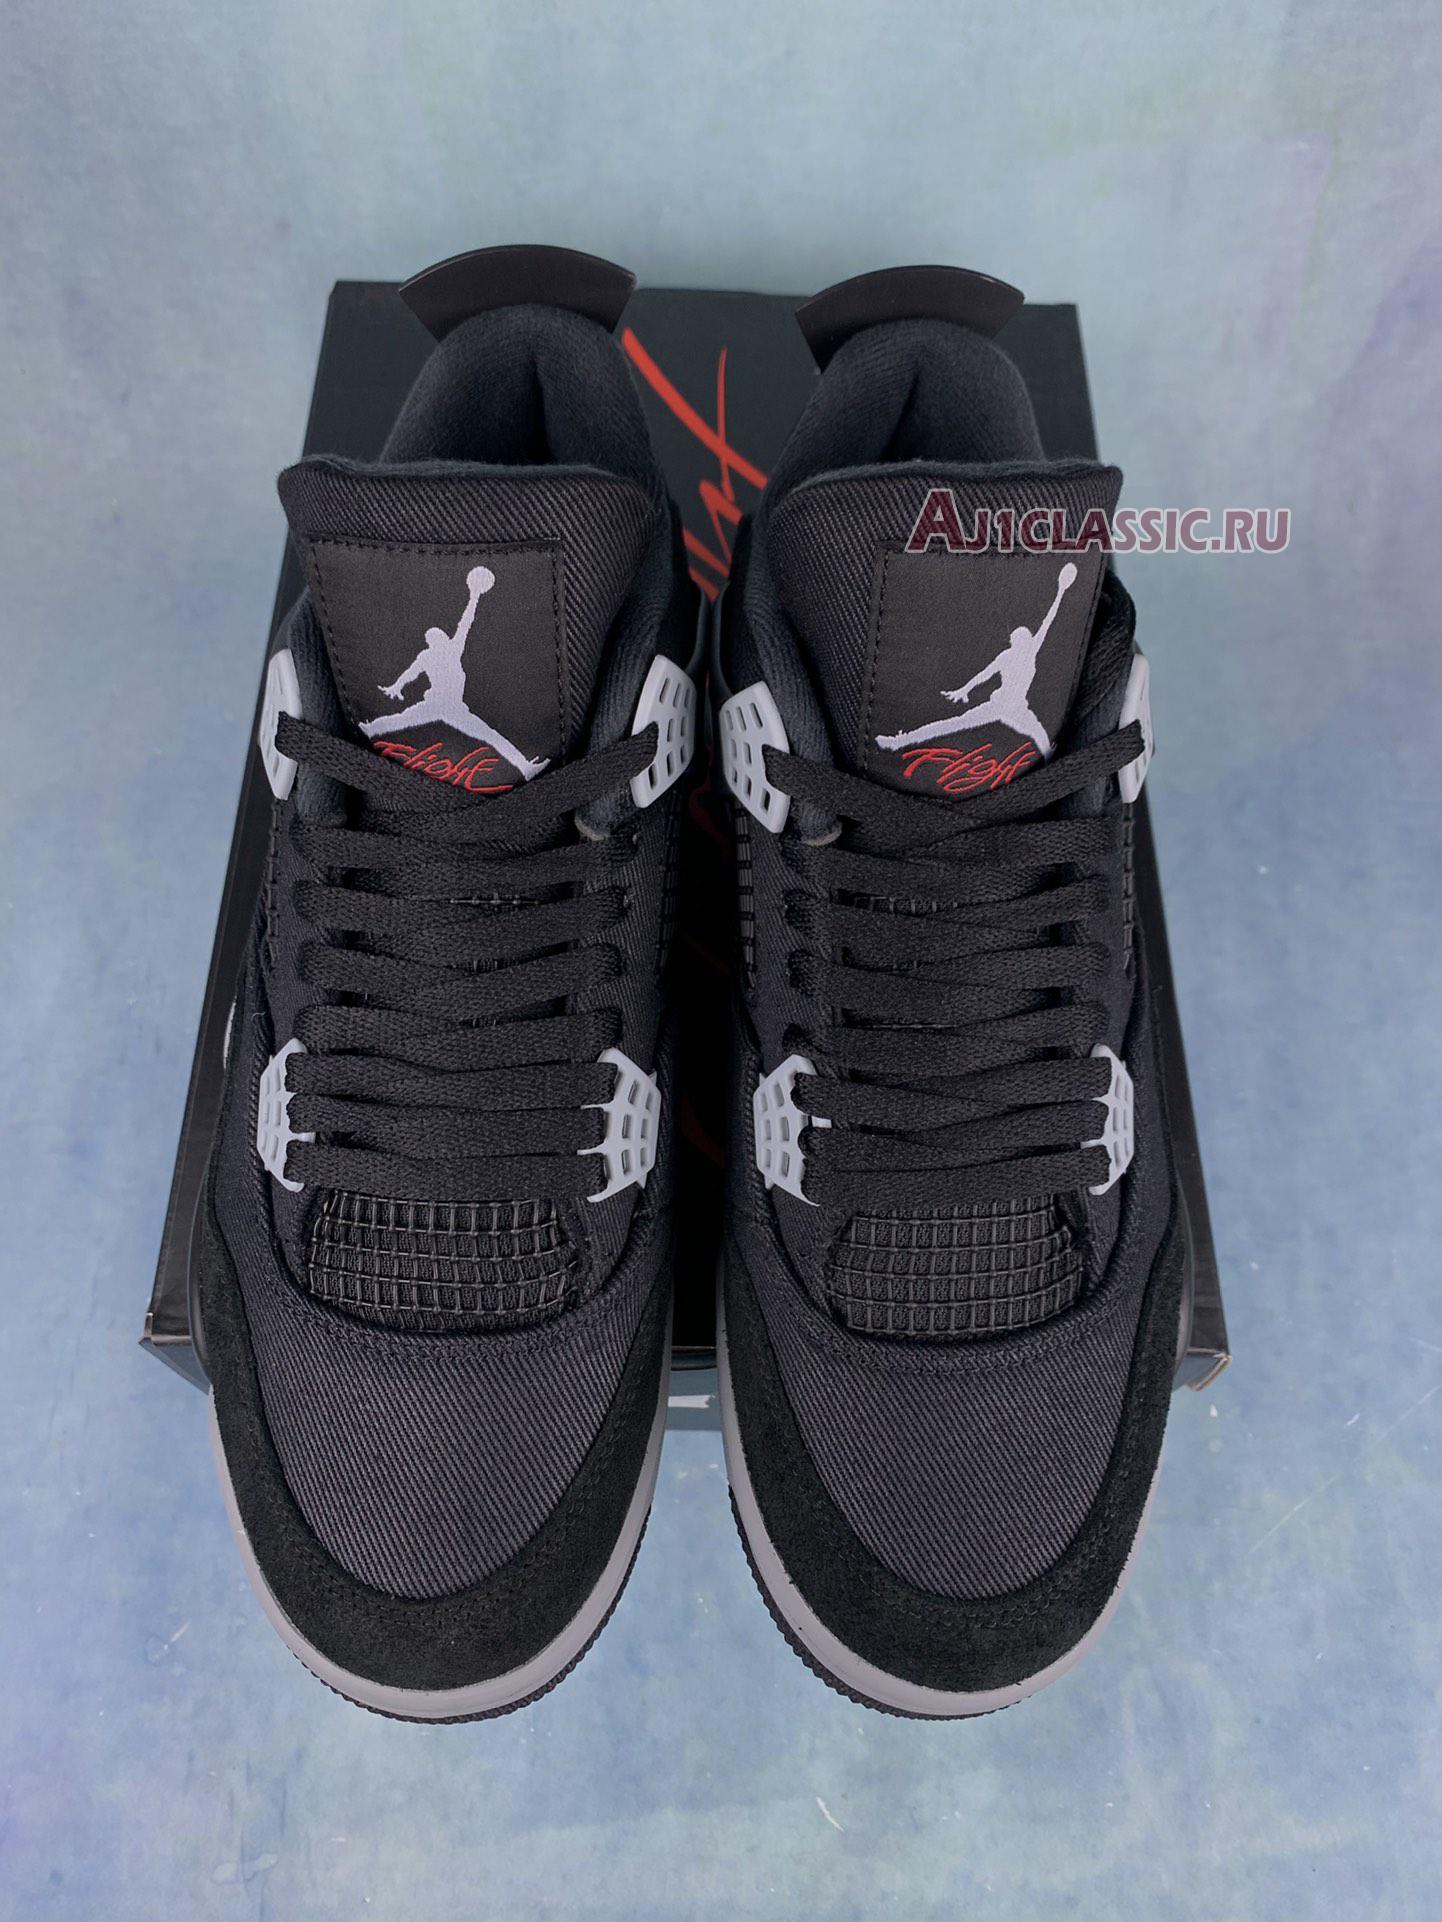 Air Jordan 4 "Black Canvas" DH7138-006-2